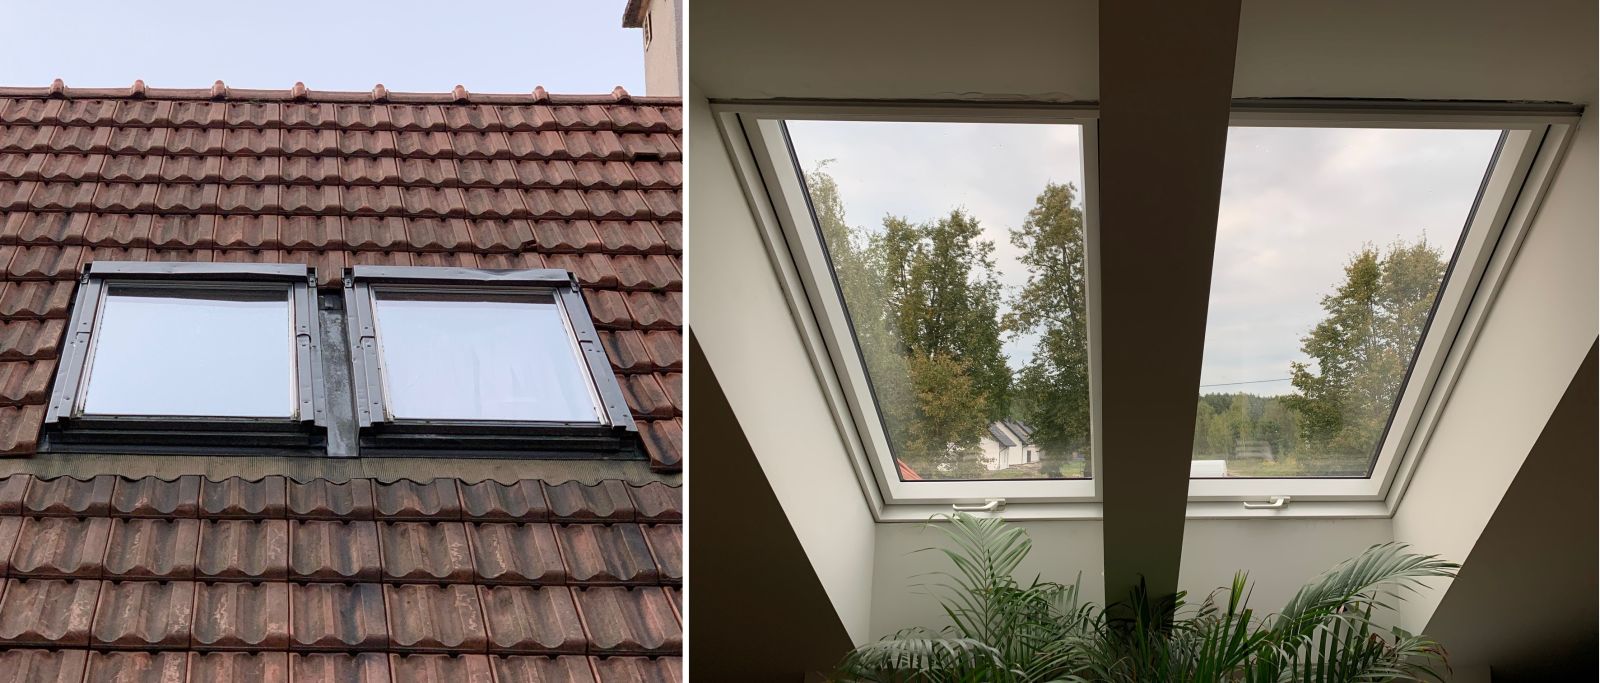 Optymalnym rozwiązaniem jest wymiana okien dachowych bez ingerencji we wnękę wykończeniową.